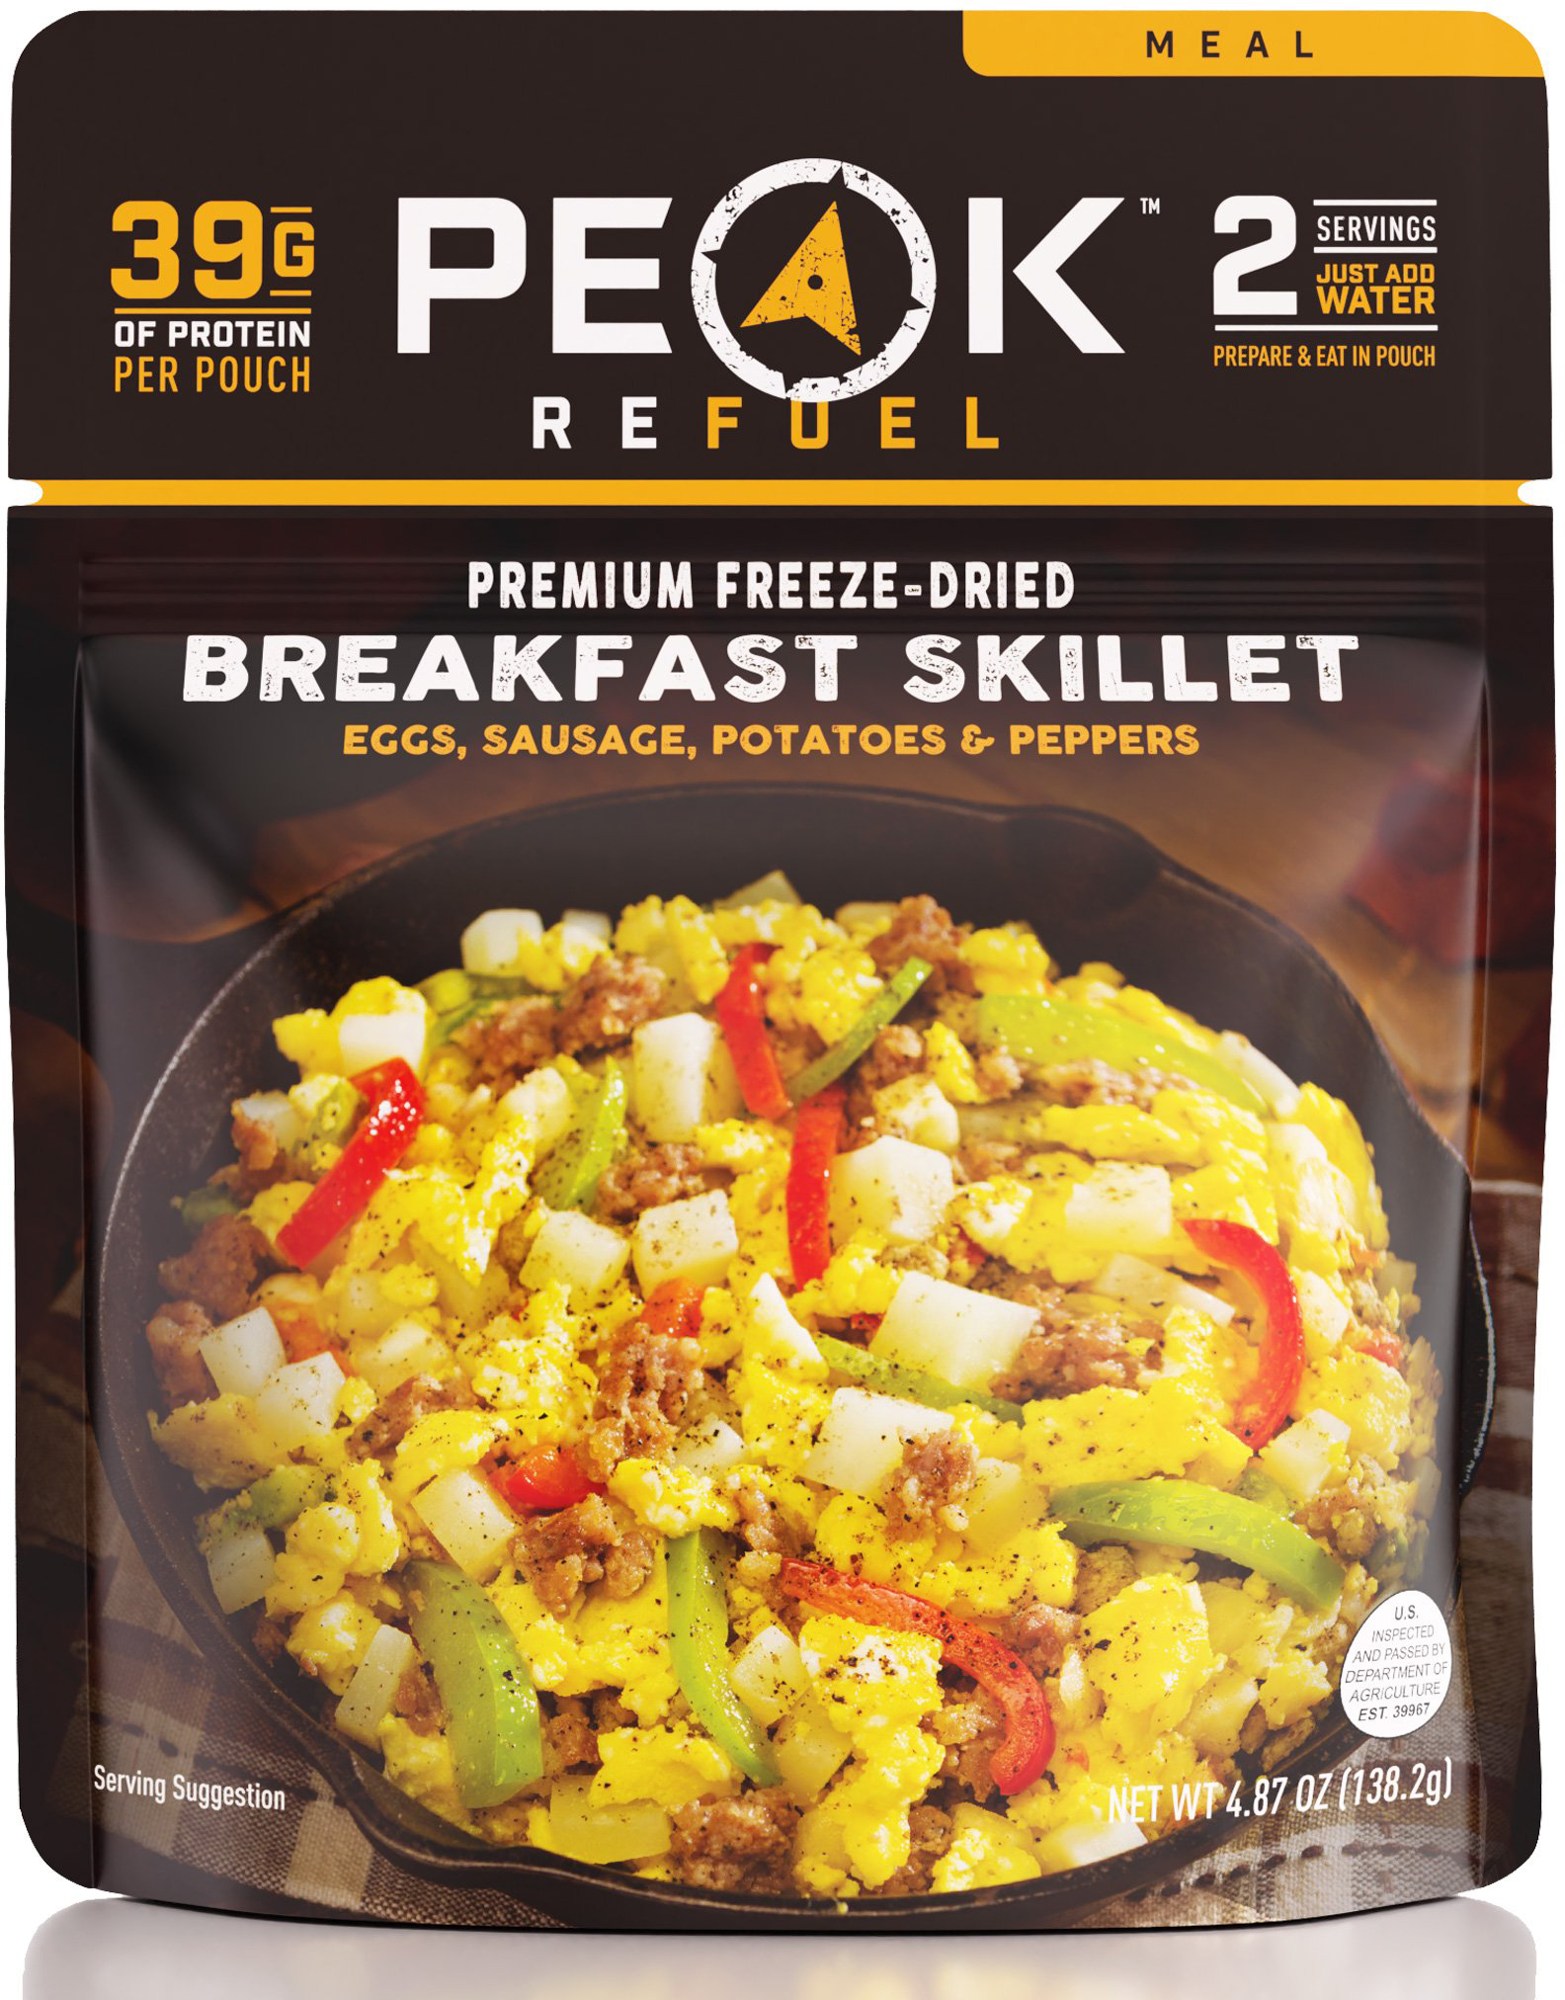 Сковорода для завтрака — 2 порции PEAK REFUEL сковорода для завтрака xl – 8 порций mountain house